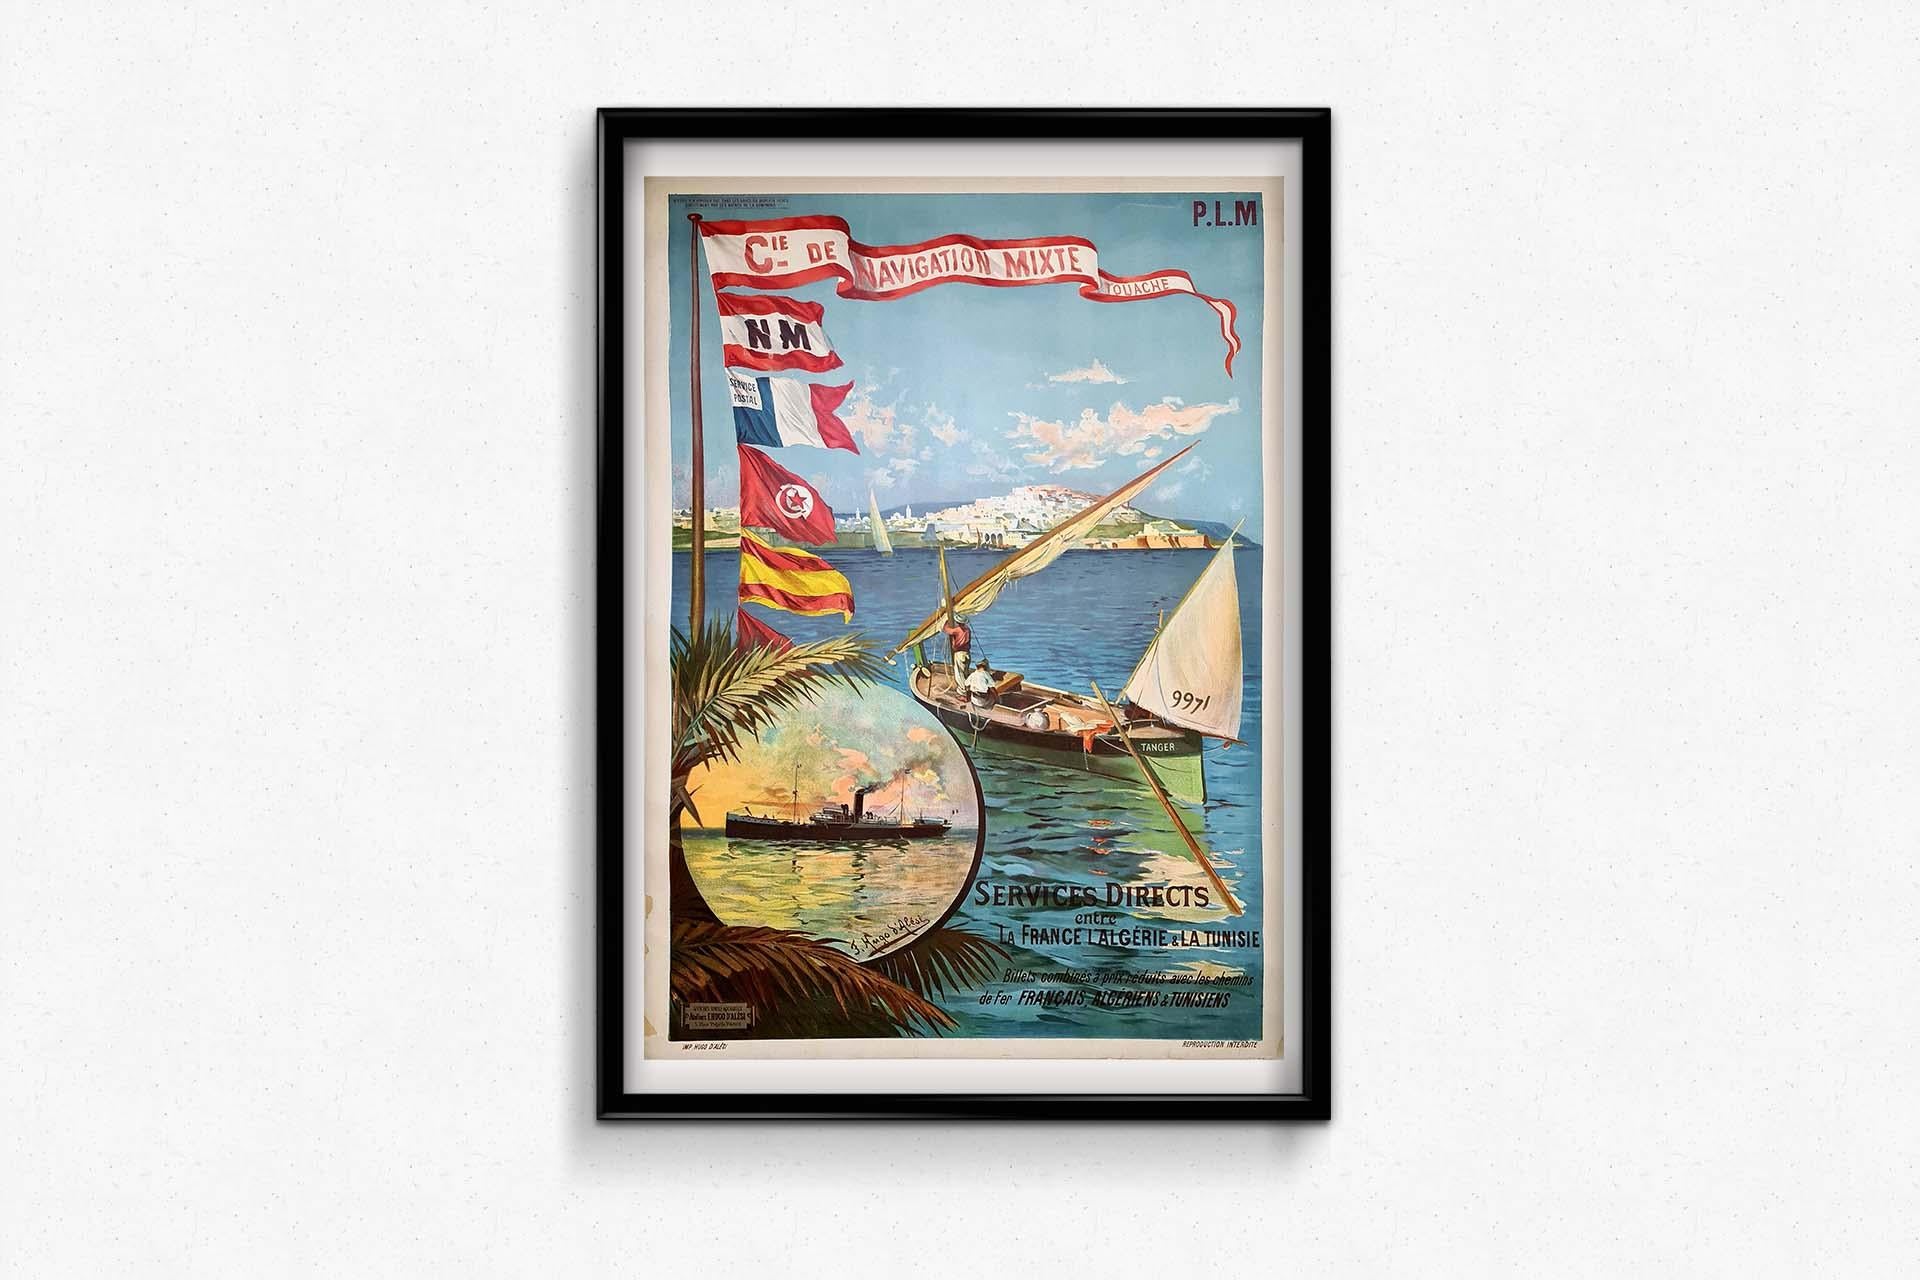 Original poster by Hugo d'Alésia for the Compagnie de Navigation mixte Touache For Sale 2